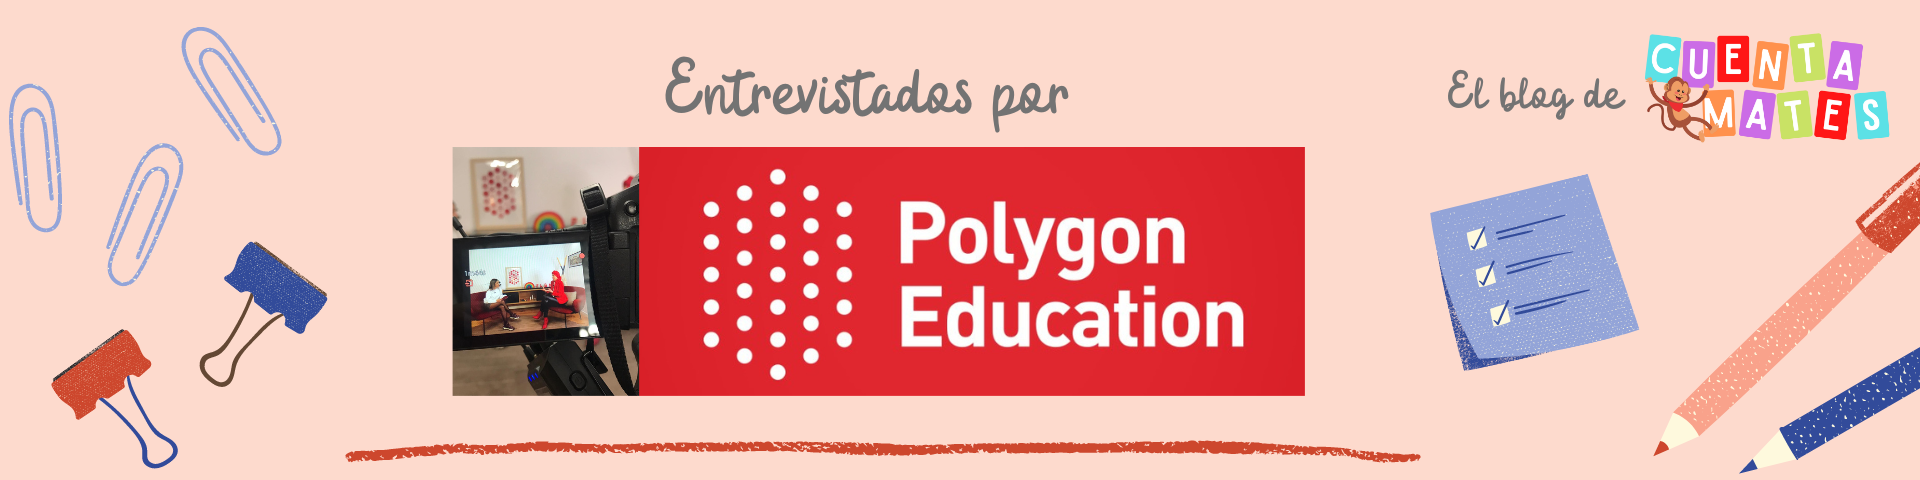 Polygon Education nos entrevista